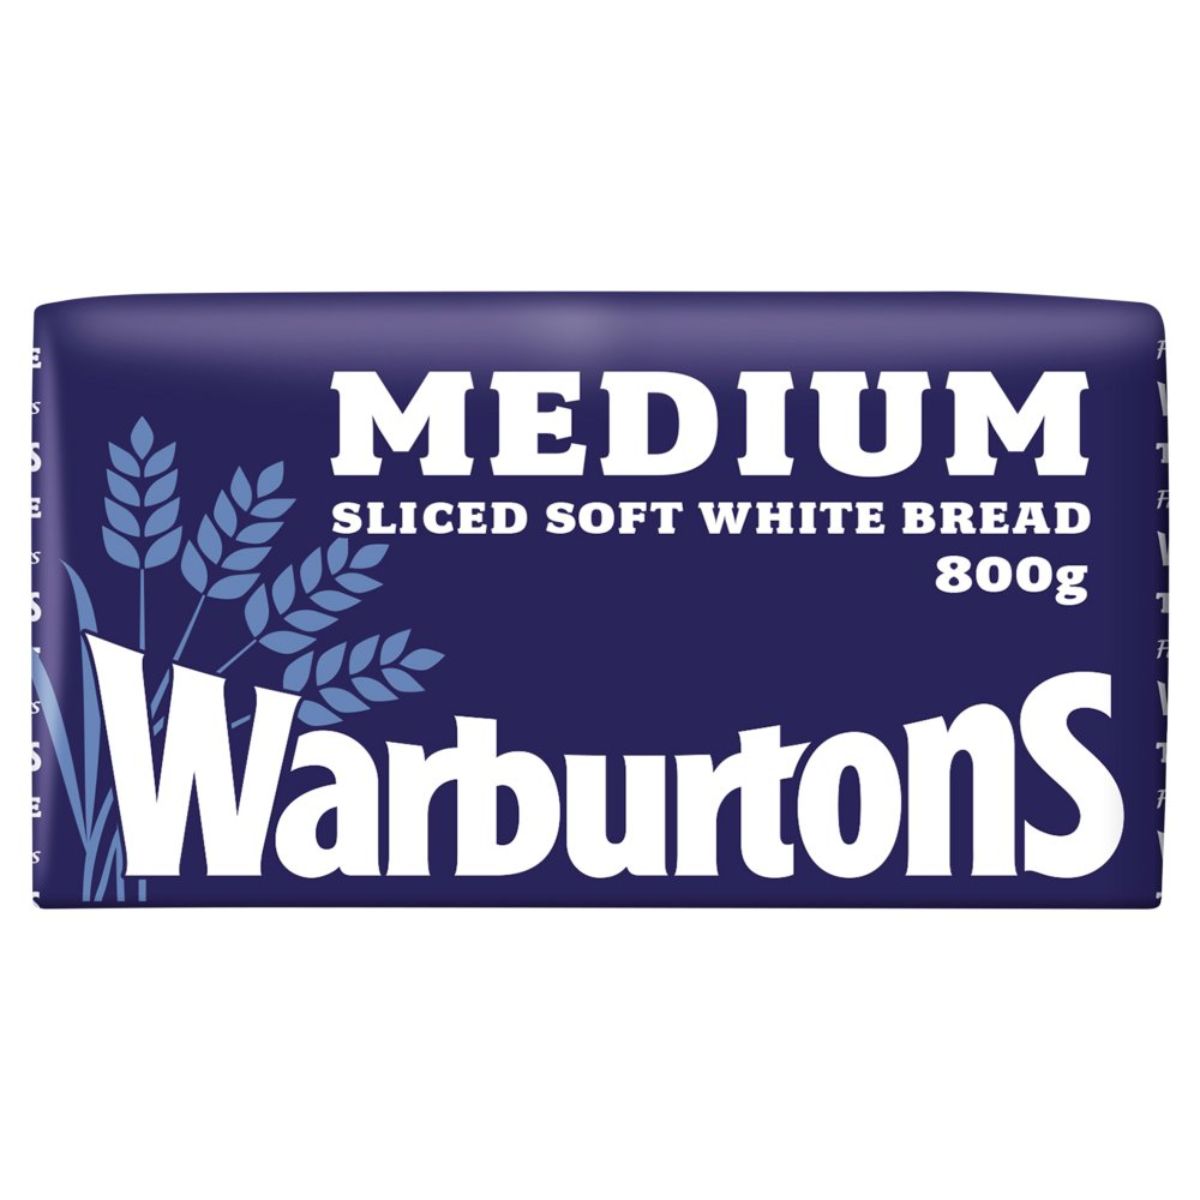 Warburtons - Medium Soft White Bread - 800g